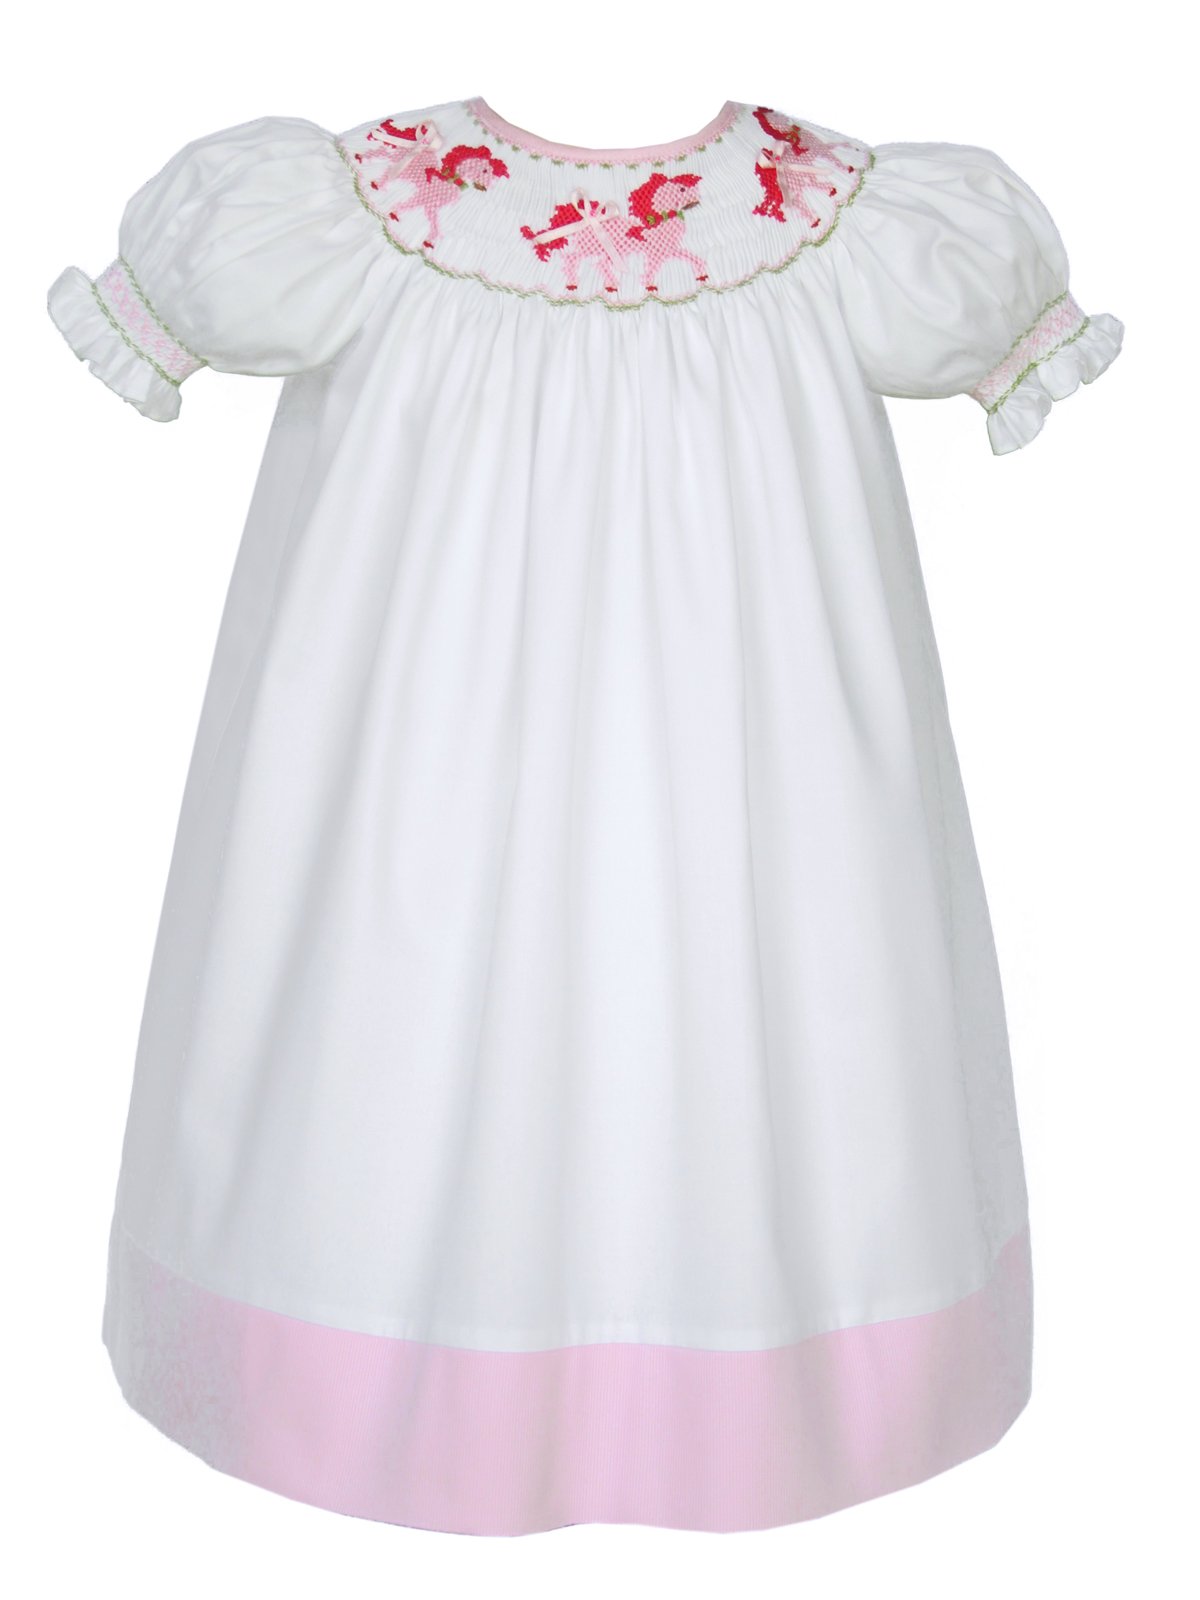 Carouselwear White Hand Smocked Pink Horses Girls Bishop Dress